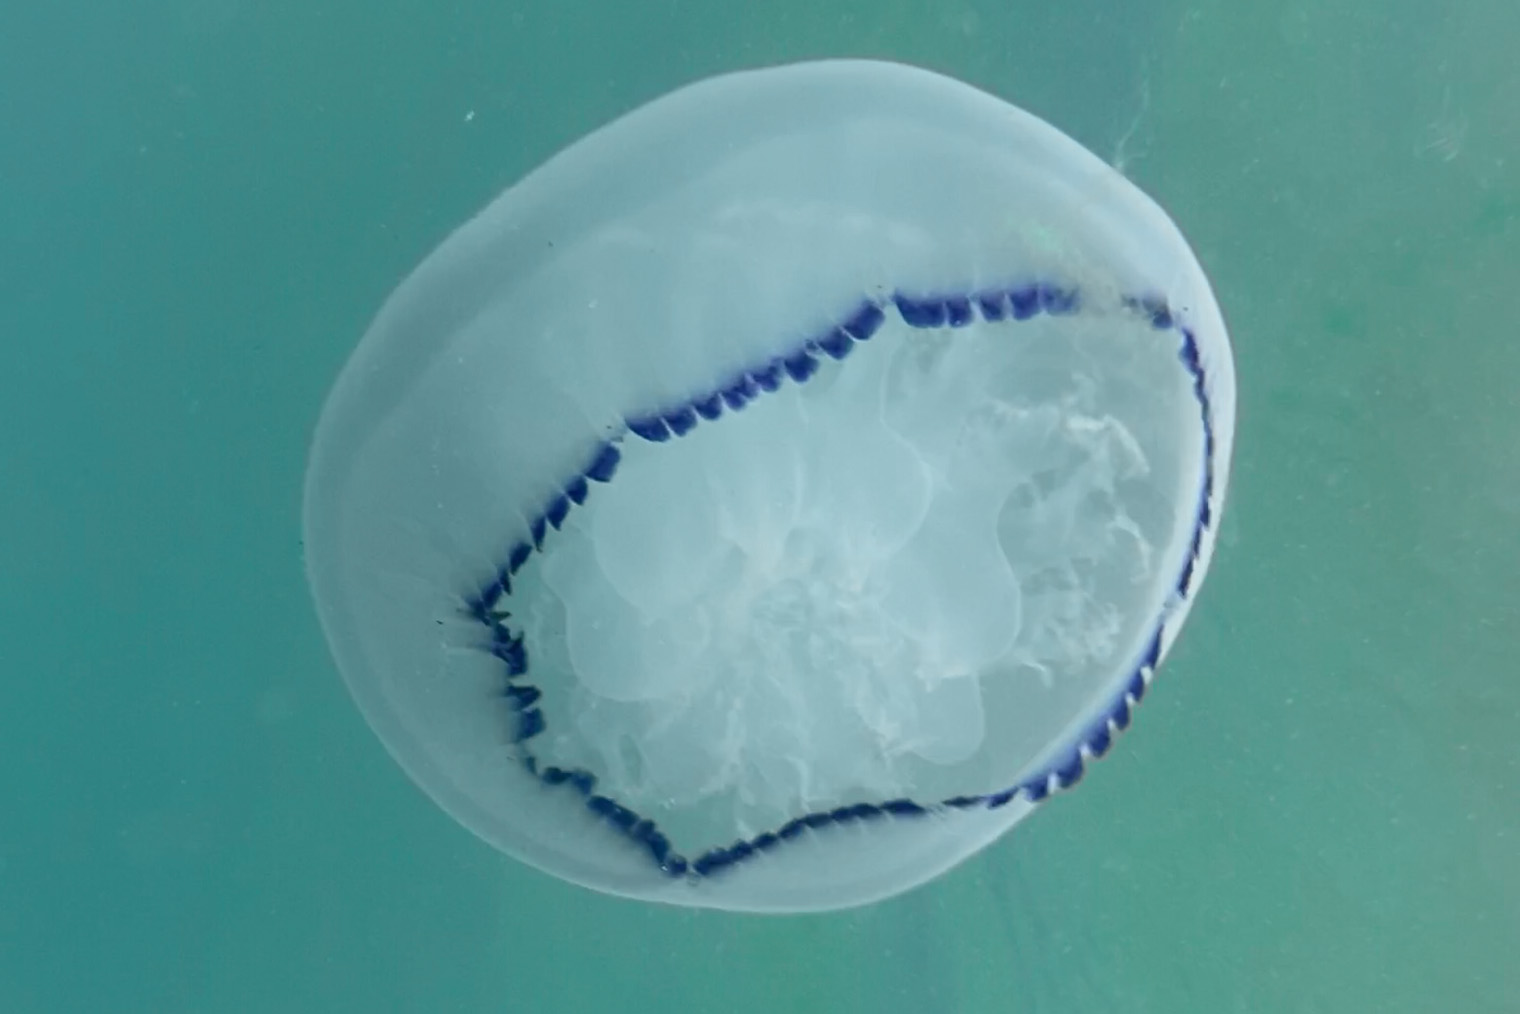 Эту медузу я сфотографировала под водой. Ее диаметр — не более 10 см